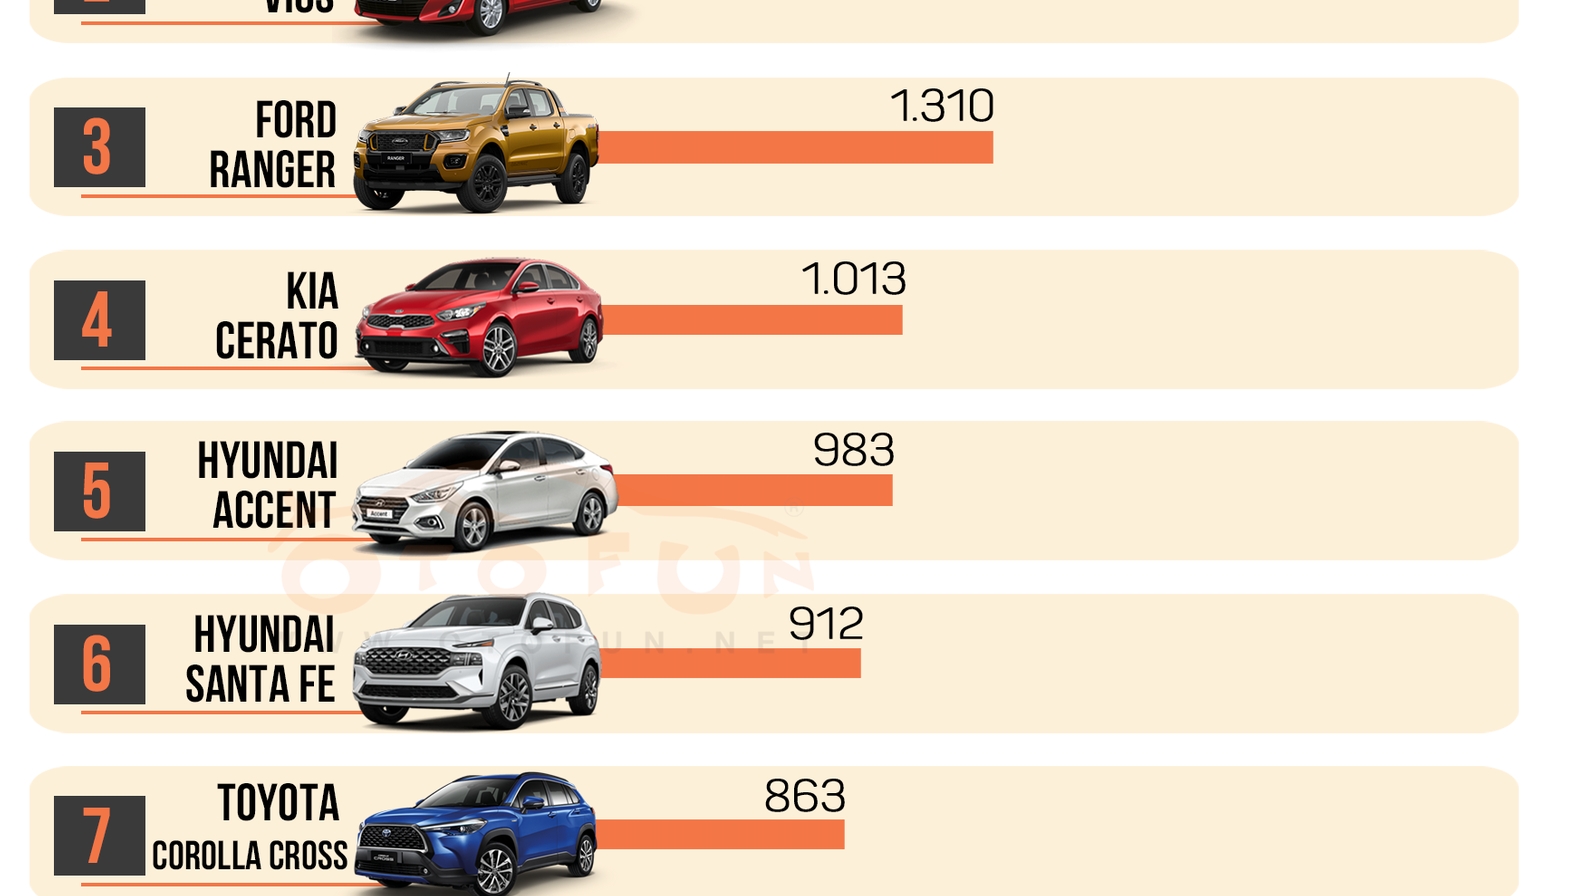 [Infographic] Top 10 xe bán chạy nhất tháng 7/2021